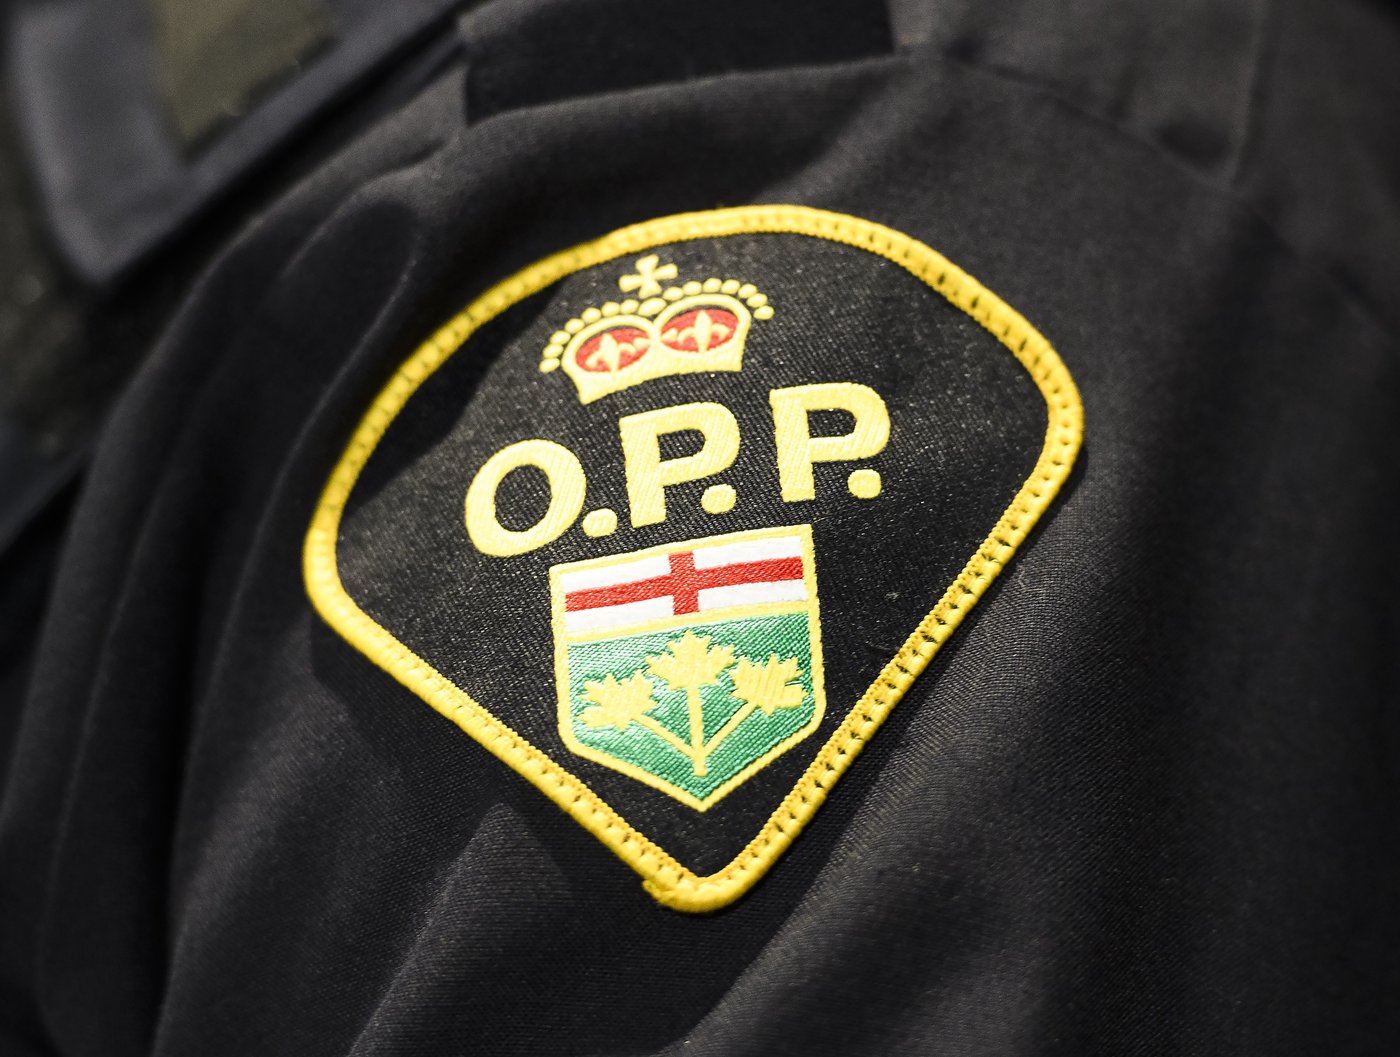 La Police provinciale de l’Ontario lie deux doubles homicides à un suspect